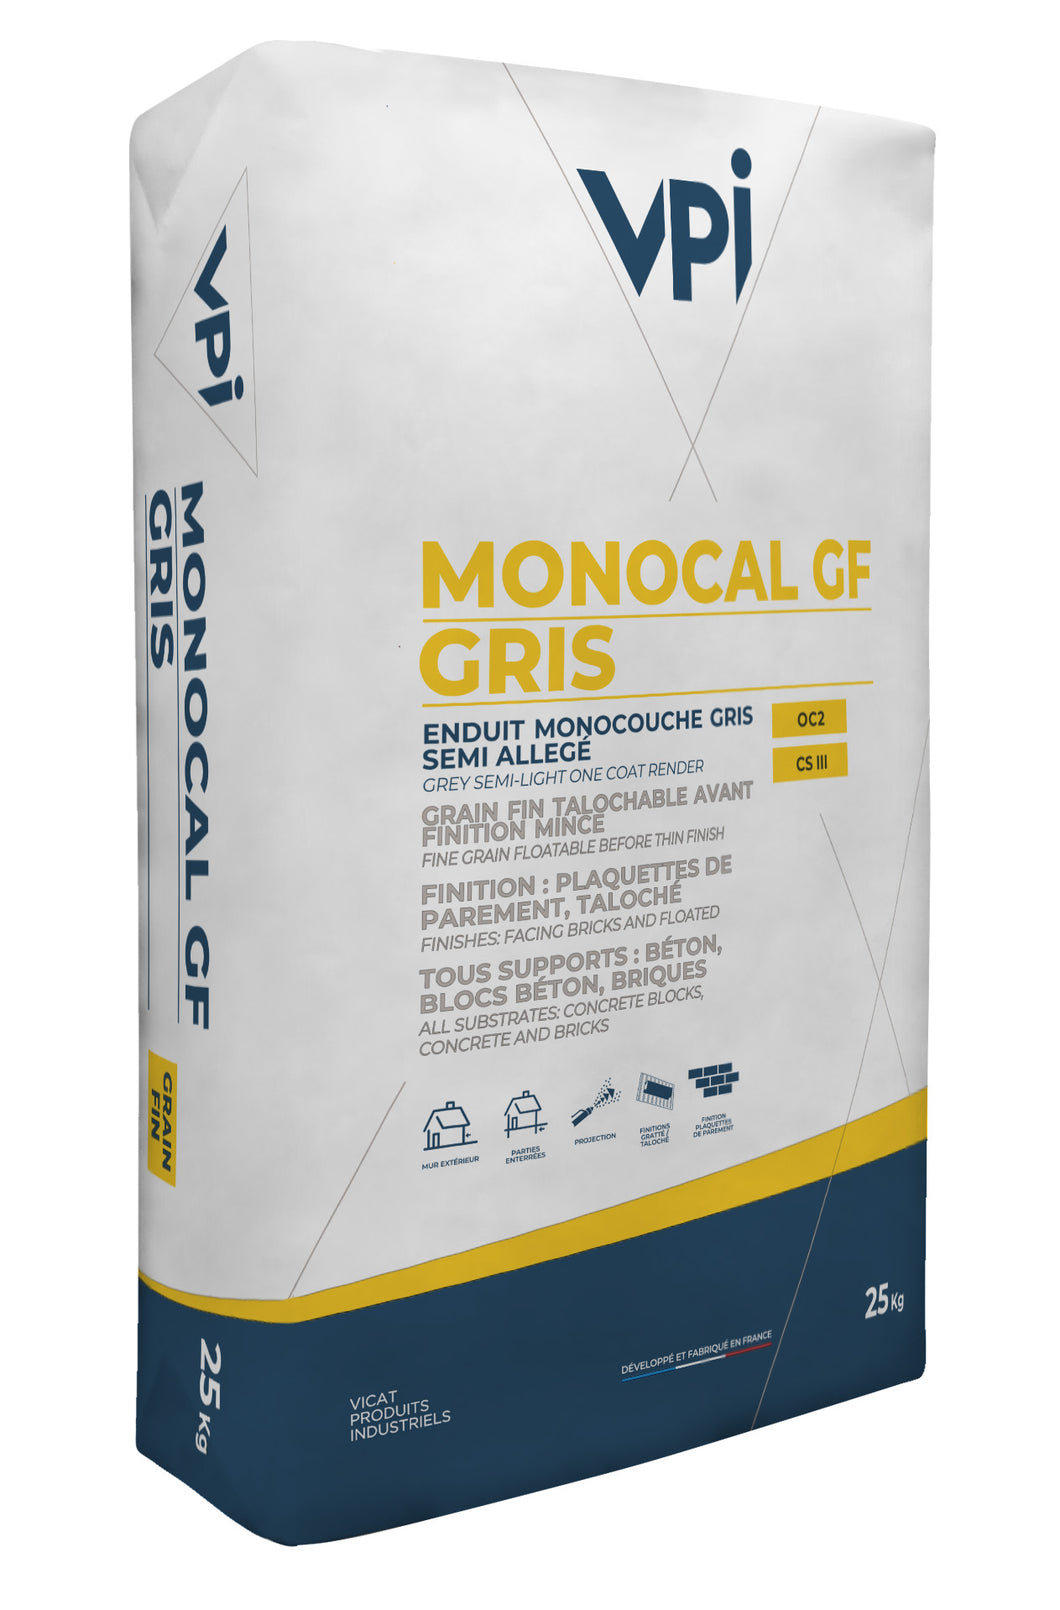 VPI Monocal GF Gris Basecoat